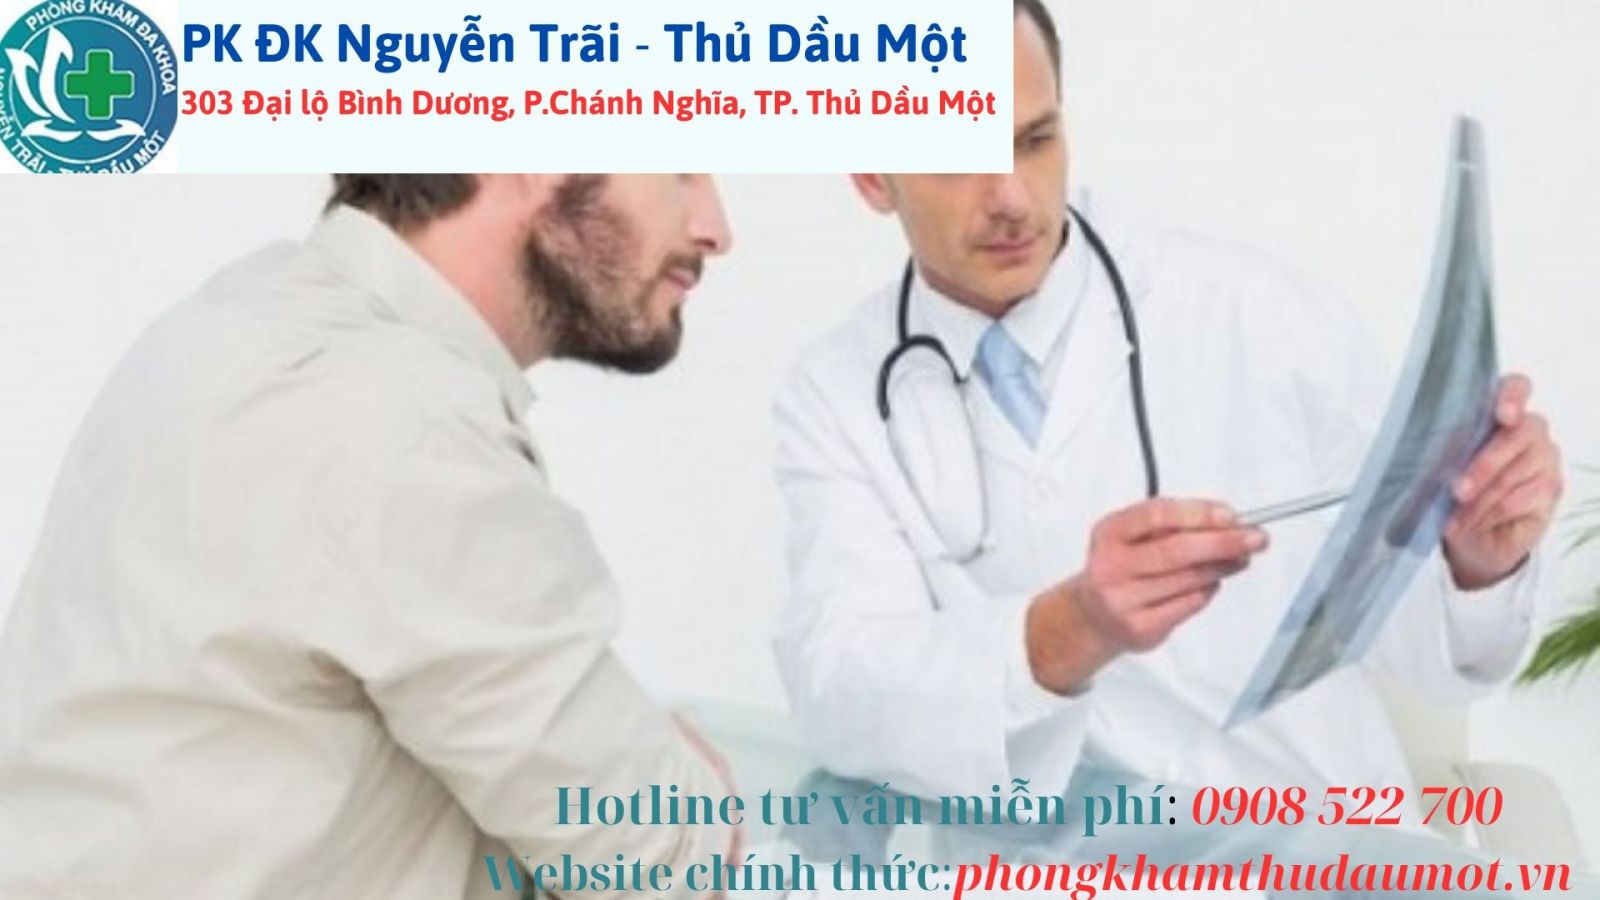 Vì sao nên chọn phòng khám đa khoa Nguyễn Trãi - Thủ Dầu Một là nơi điều trị uy tín, chất lượng?